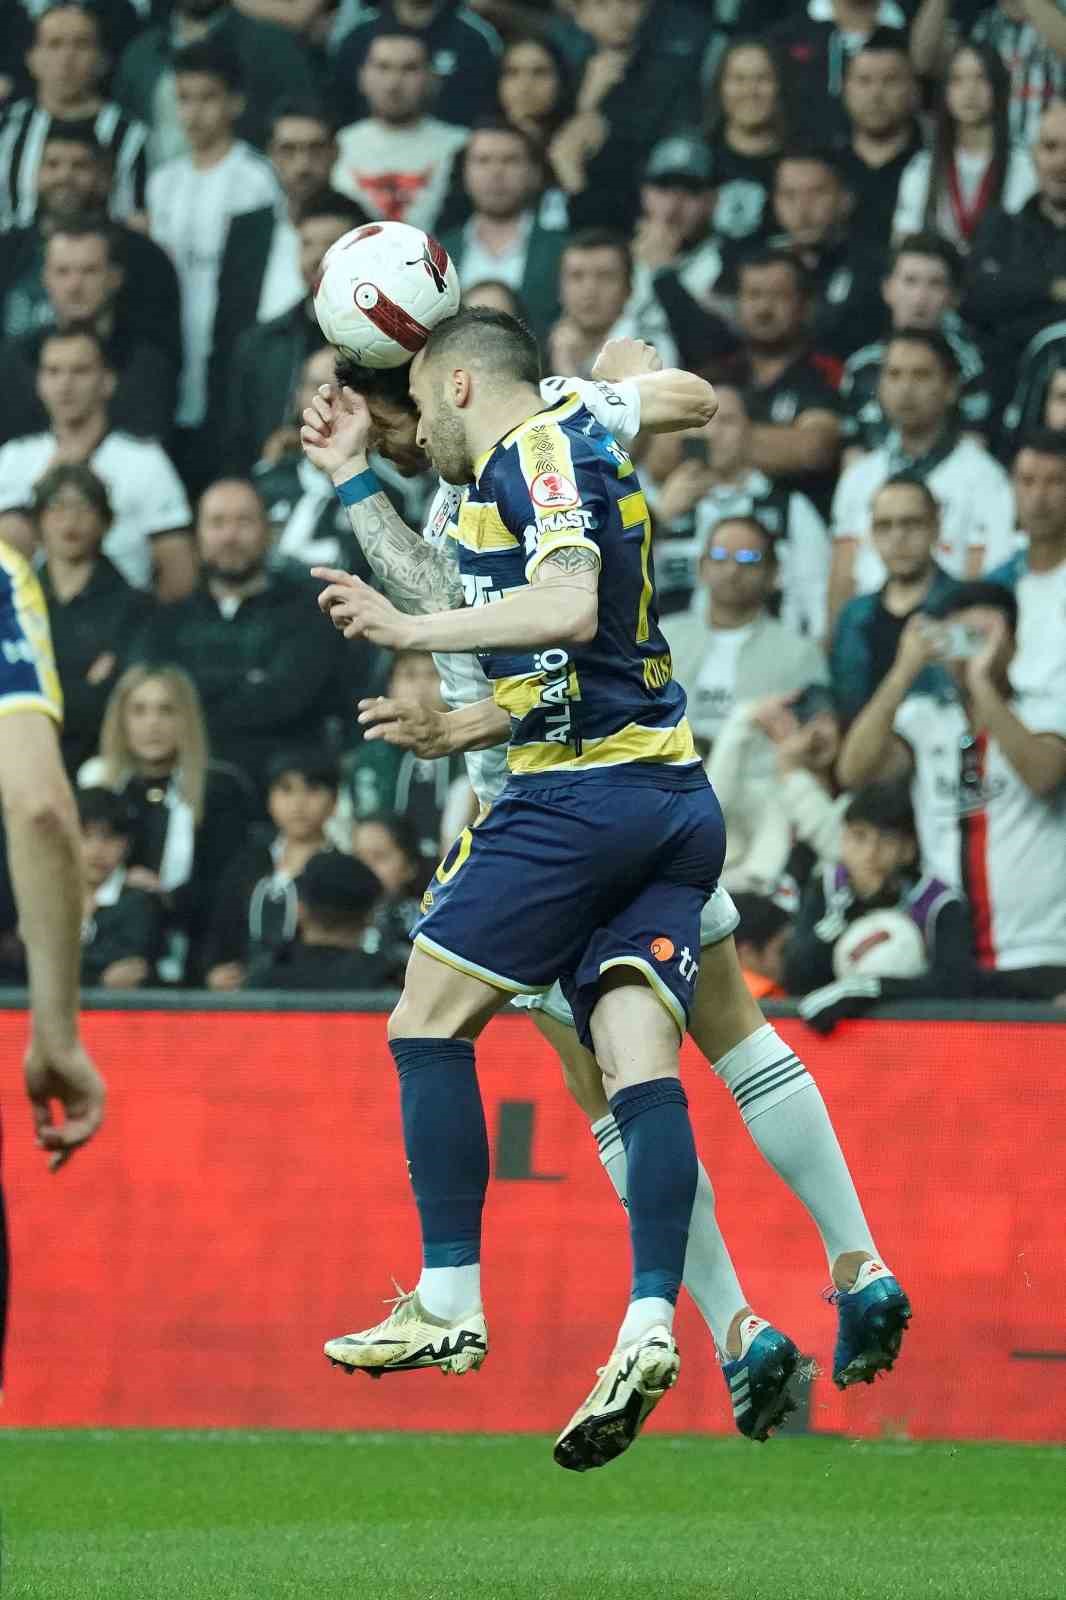 Ziraat Türkiye Kupası: Beşiktaş: 0 - MKE Ankaragücü: 0 (Maç devam ediyor)
